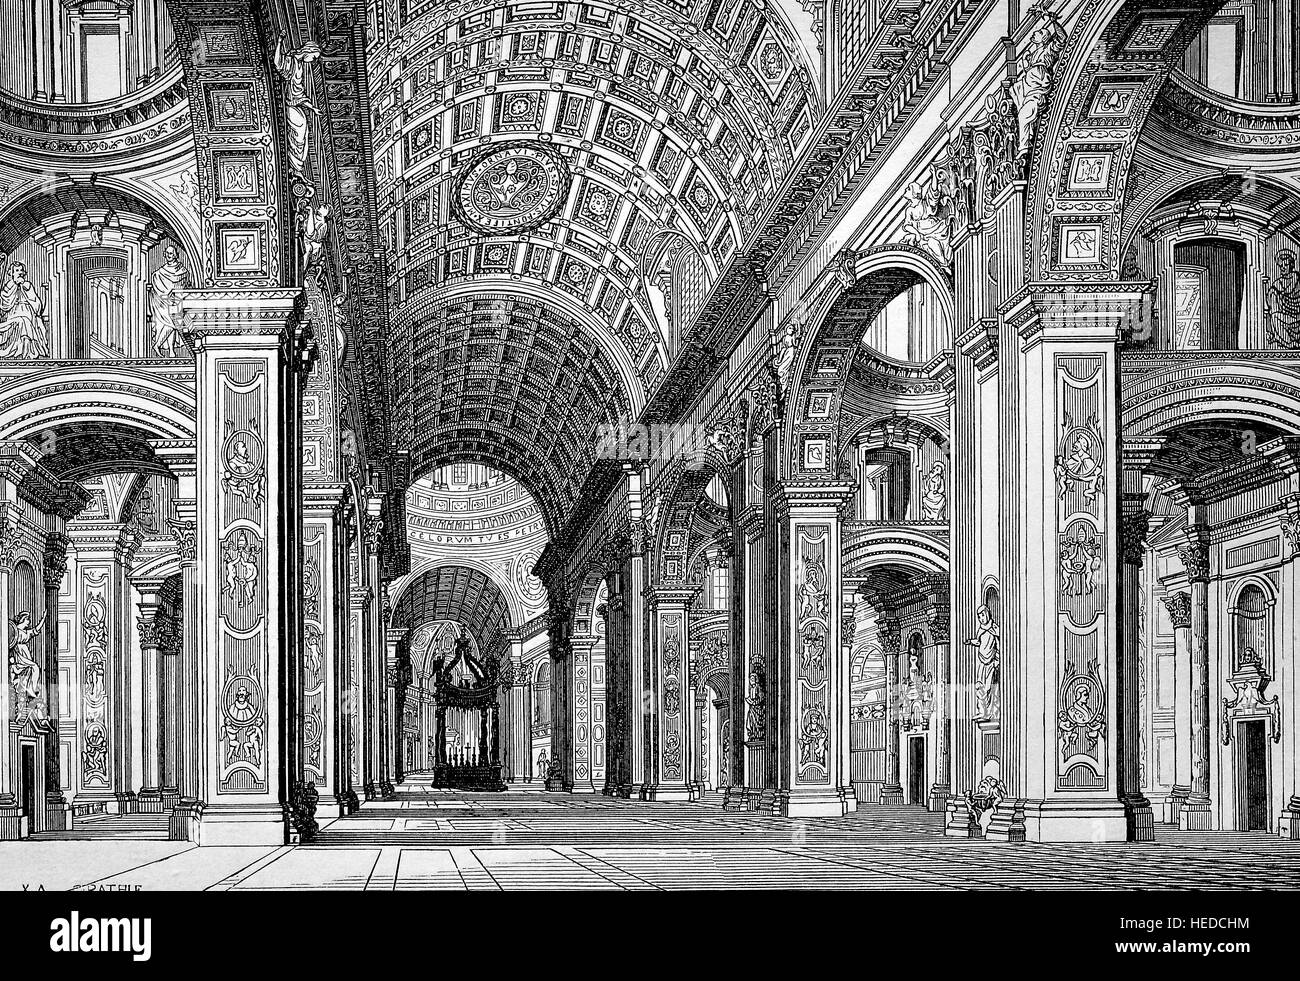 L'intérieur de la Basilique Papale de Saint Pierre au Vatican ou simplement la Basilique Saint Pierre, une église de la Renaissance italienne dans la Cité du Vatican, l'enclave des Papes dans la ville de Rome, à partir d'une gravure sur bois de 1880, l'amélioration numérique Banque D'Images